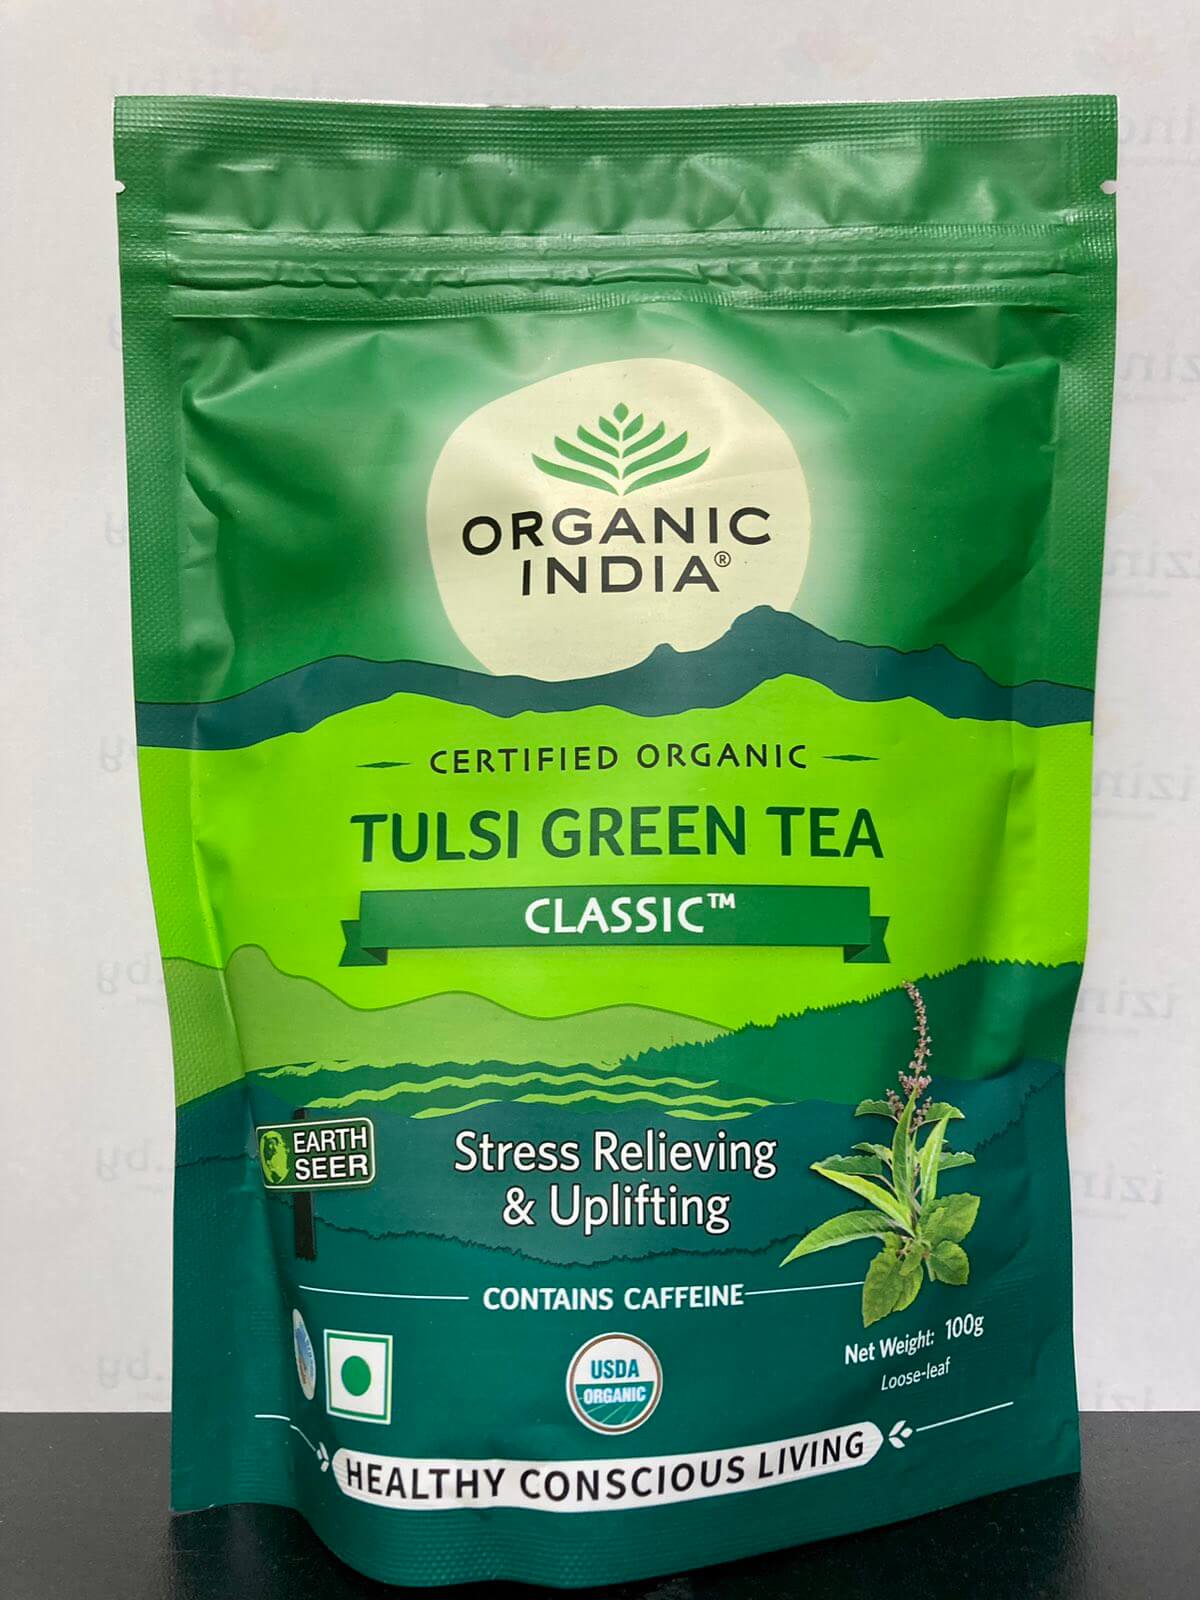 TULSI GREEN TEA CLASSIC, Stress Relieving & Uplifting, Organic India (ТУЛСИ ЗЕЛЁНЫЙ ЧАЙ КЛАССИК, Снимает стресс и поднимает настроение, Органик Индия), 100 г.